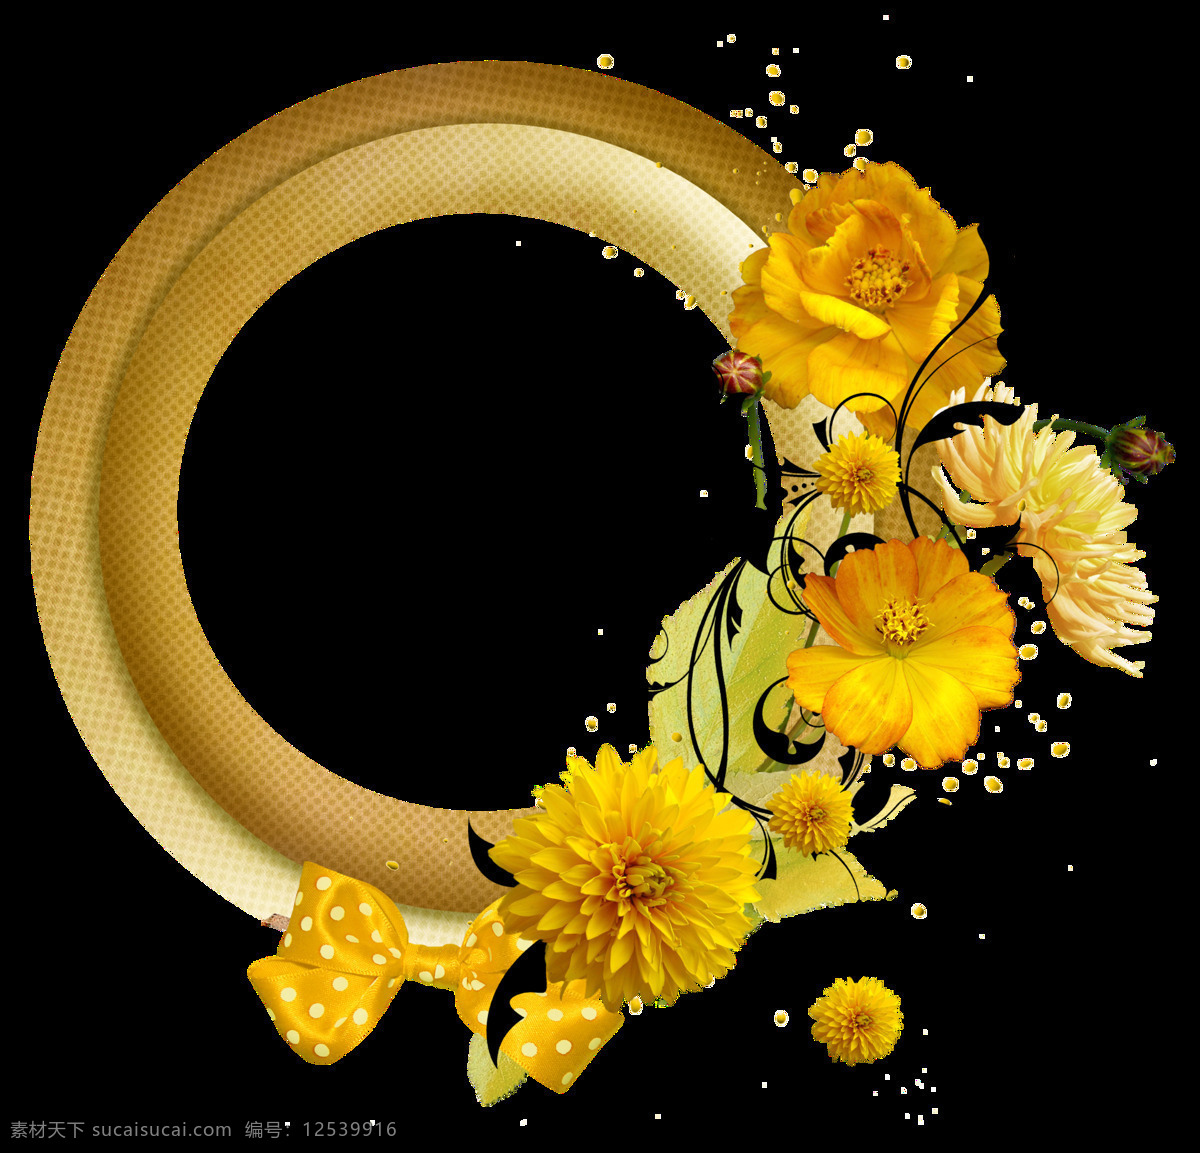 水彩 彩绘 黄花 圆形 框架 透明 菊花 玫瑰花 黑色叶子 金色 透明素材 免扣素材 装饰图片